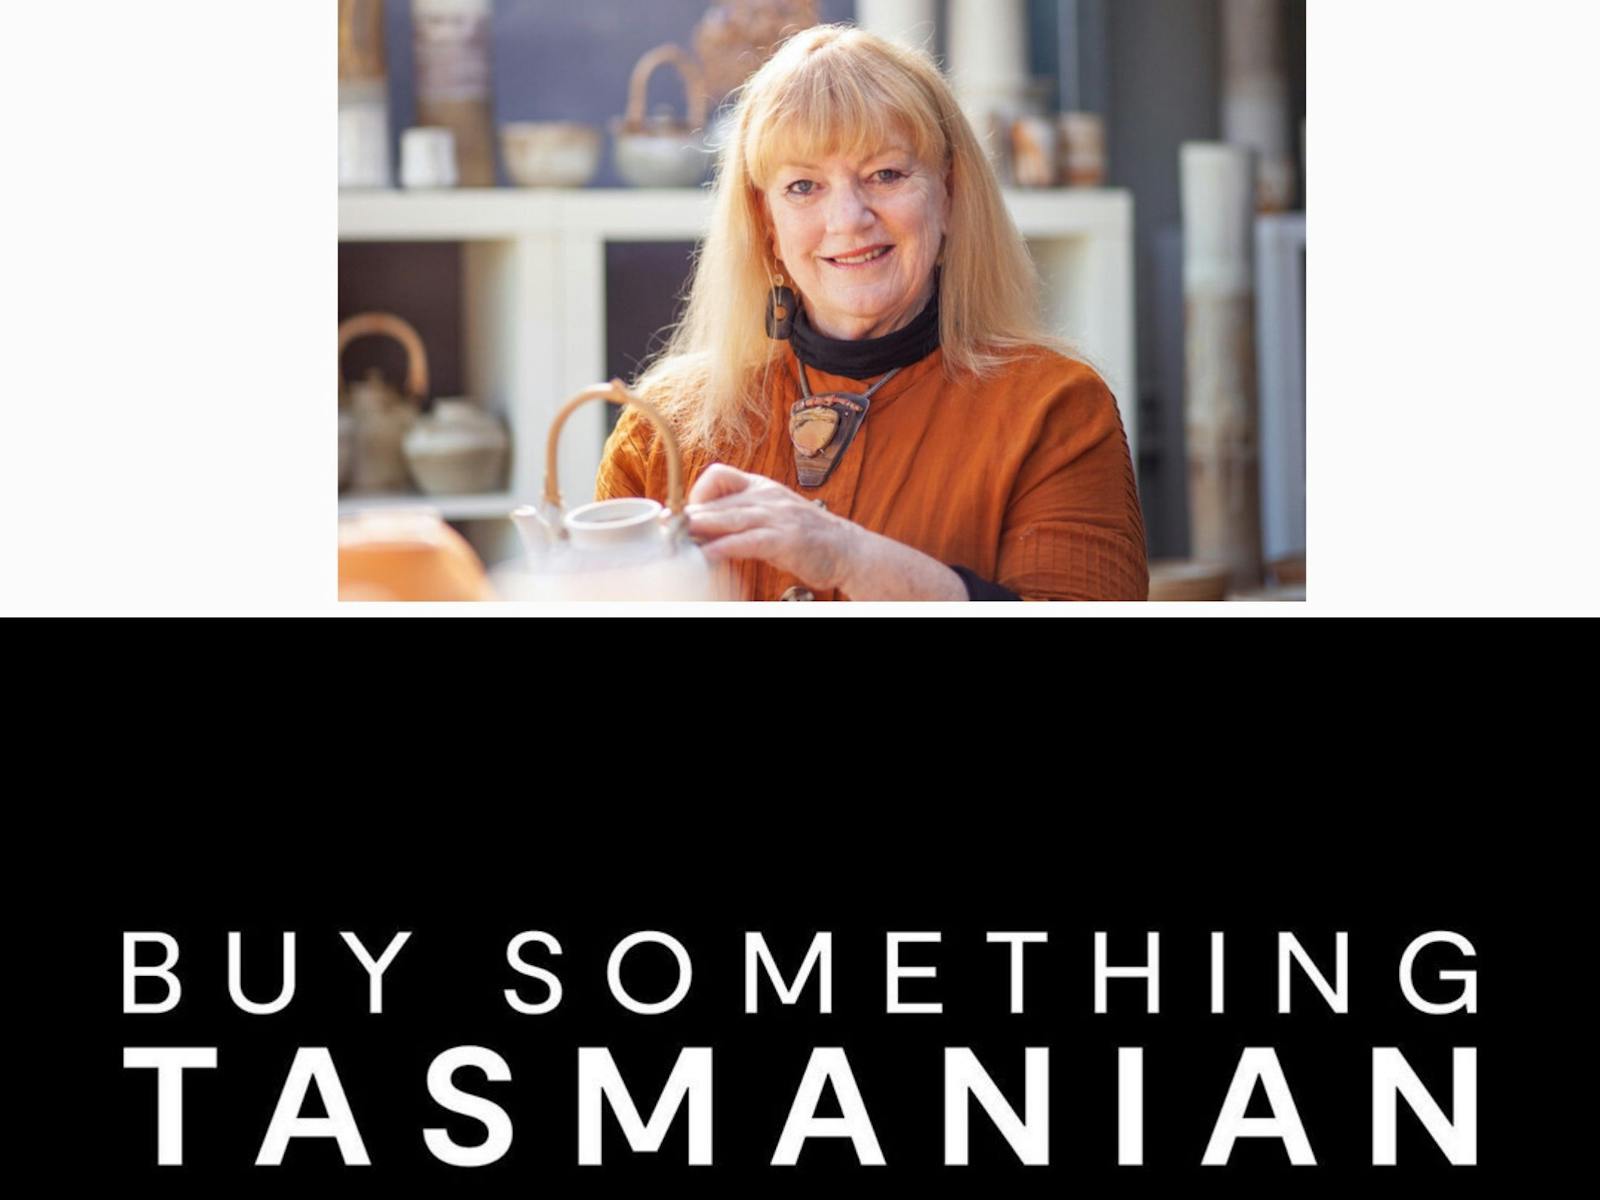 Buy something tasmanian